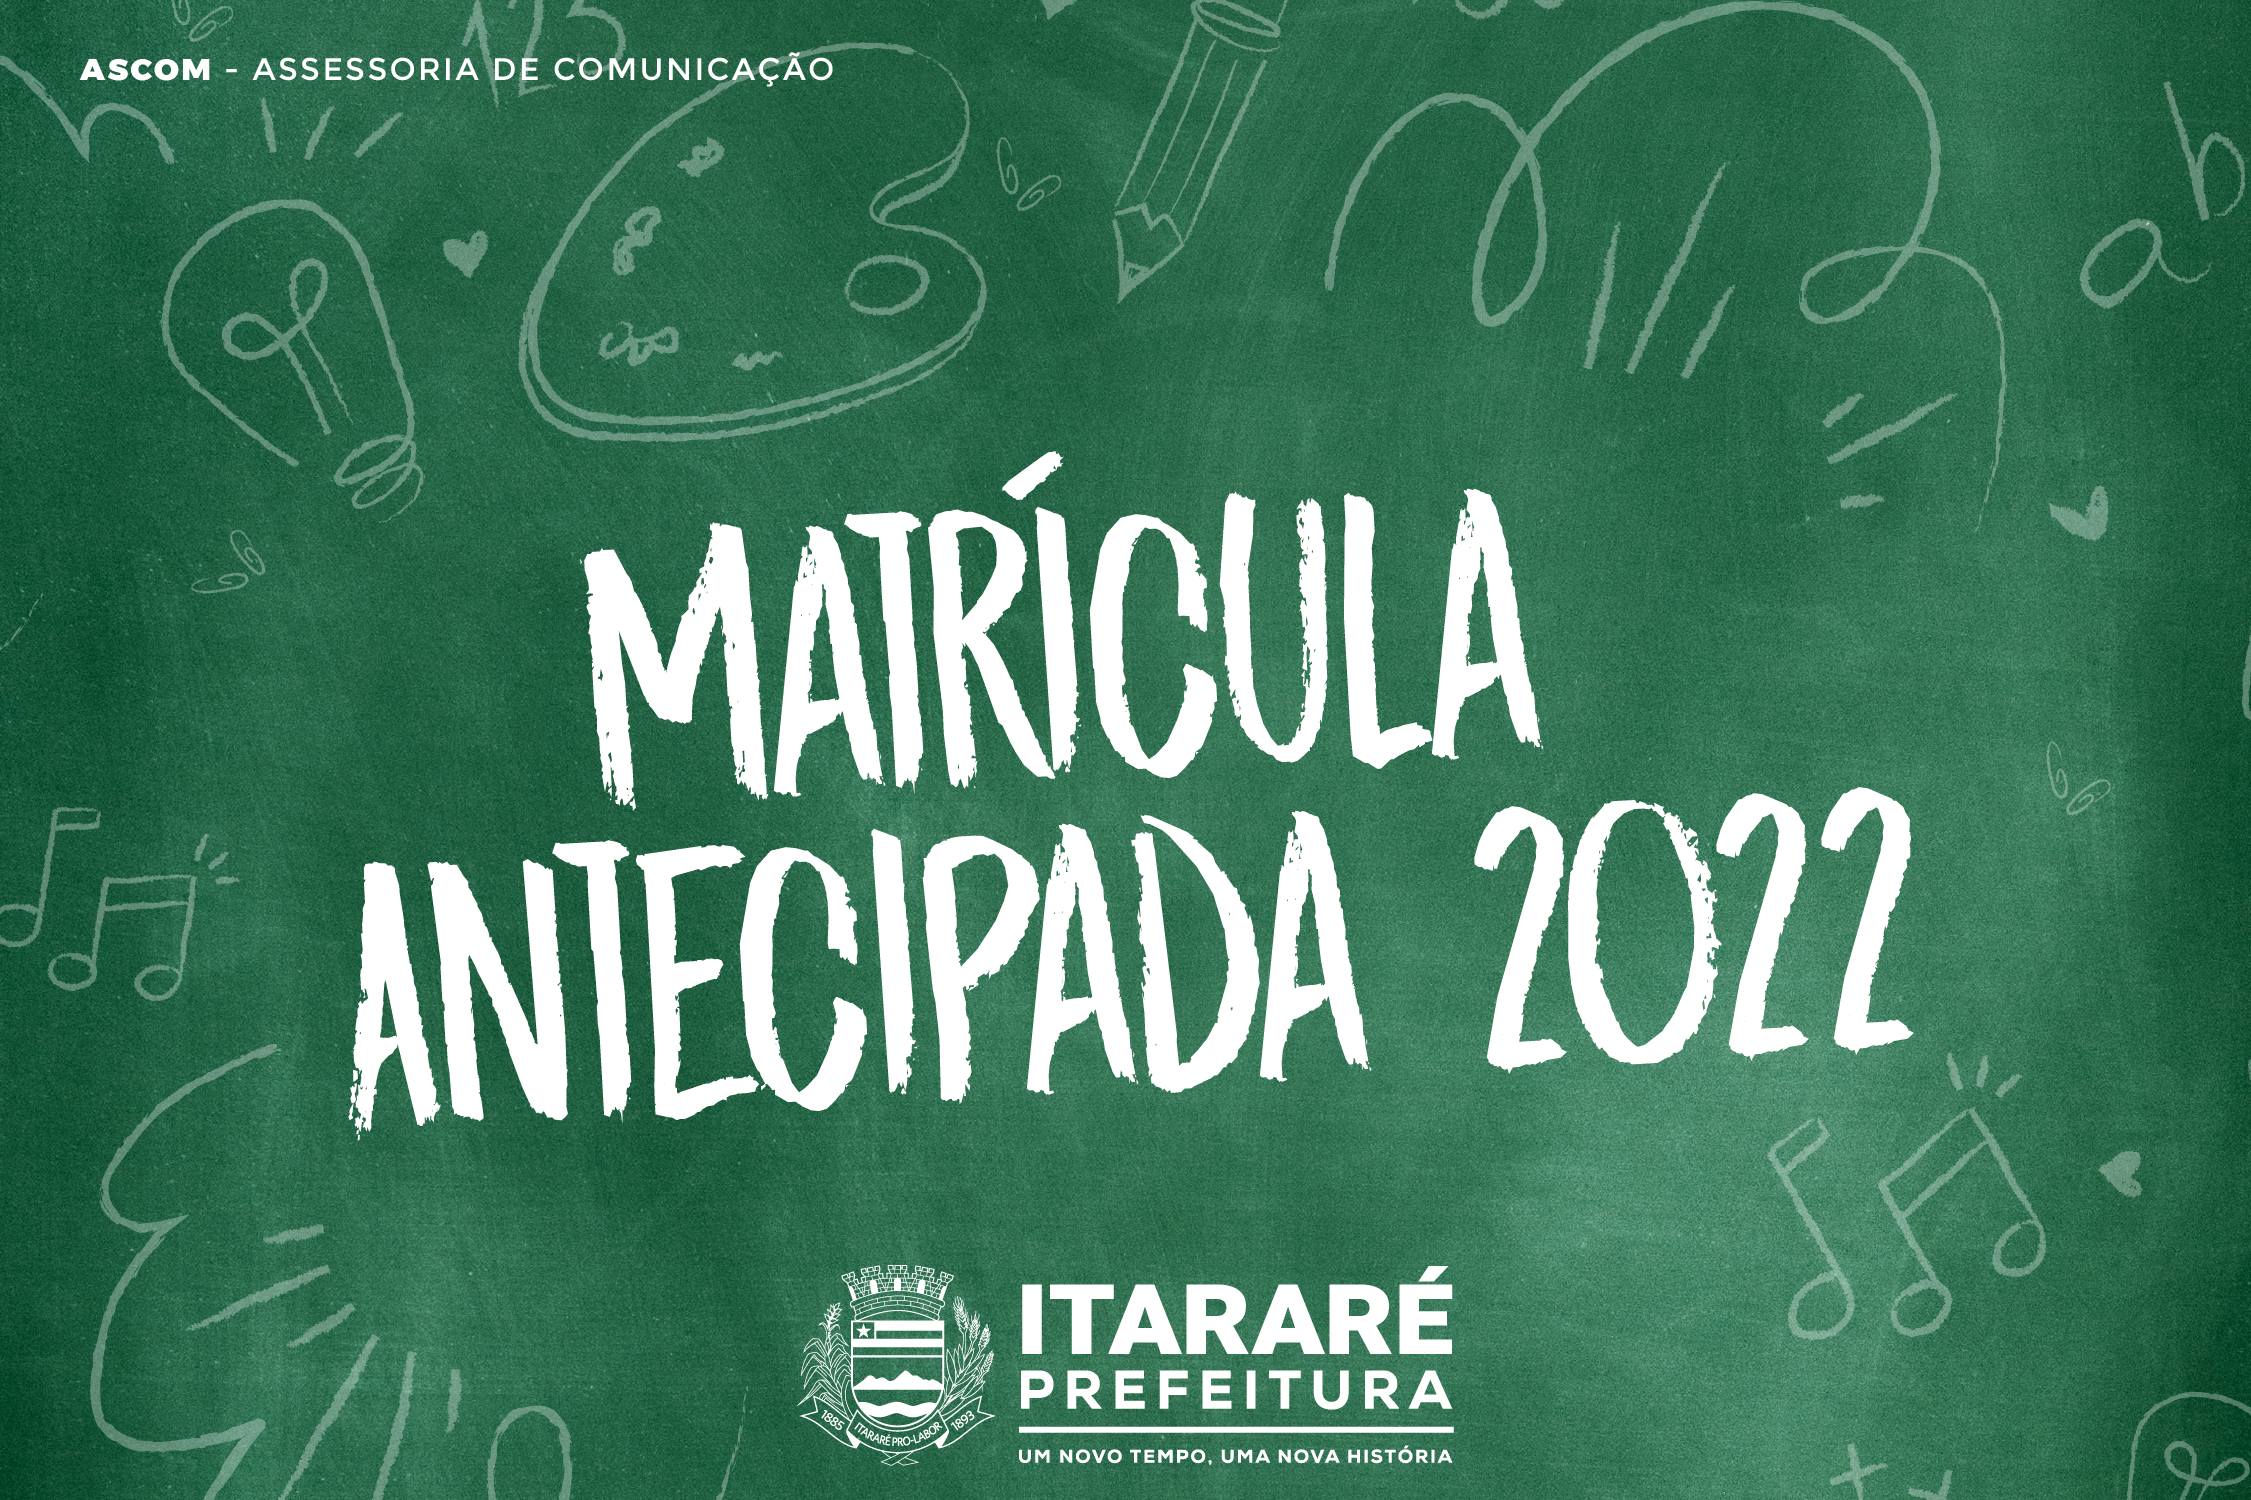 Matrículas para ano letivo 2022 na rede municipal de Itararé (SP) começam nesta quinta-feira (02)